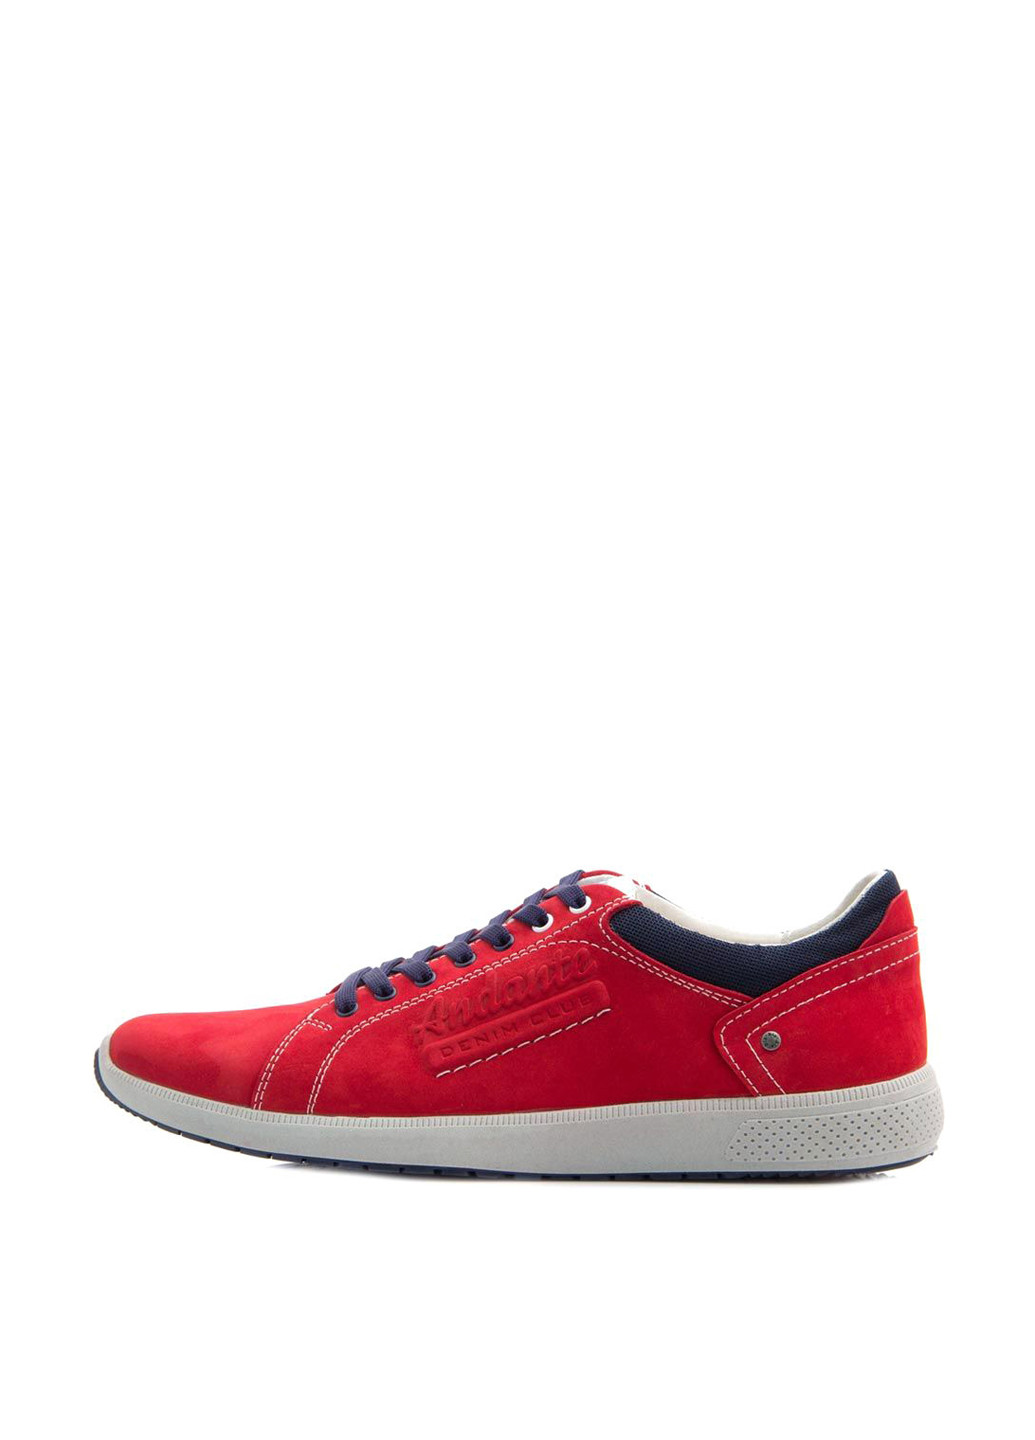 Красные спортивные туфли Andante на шнурках